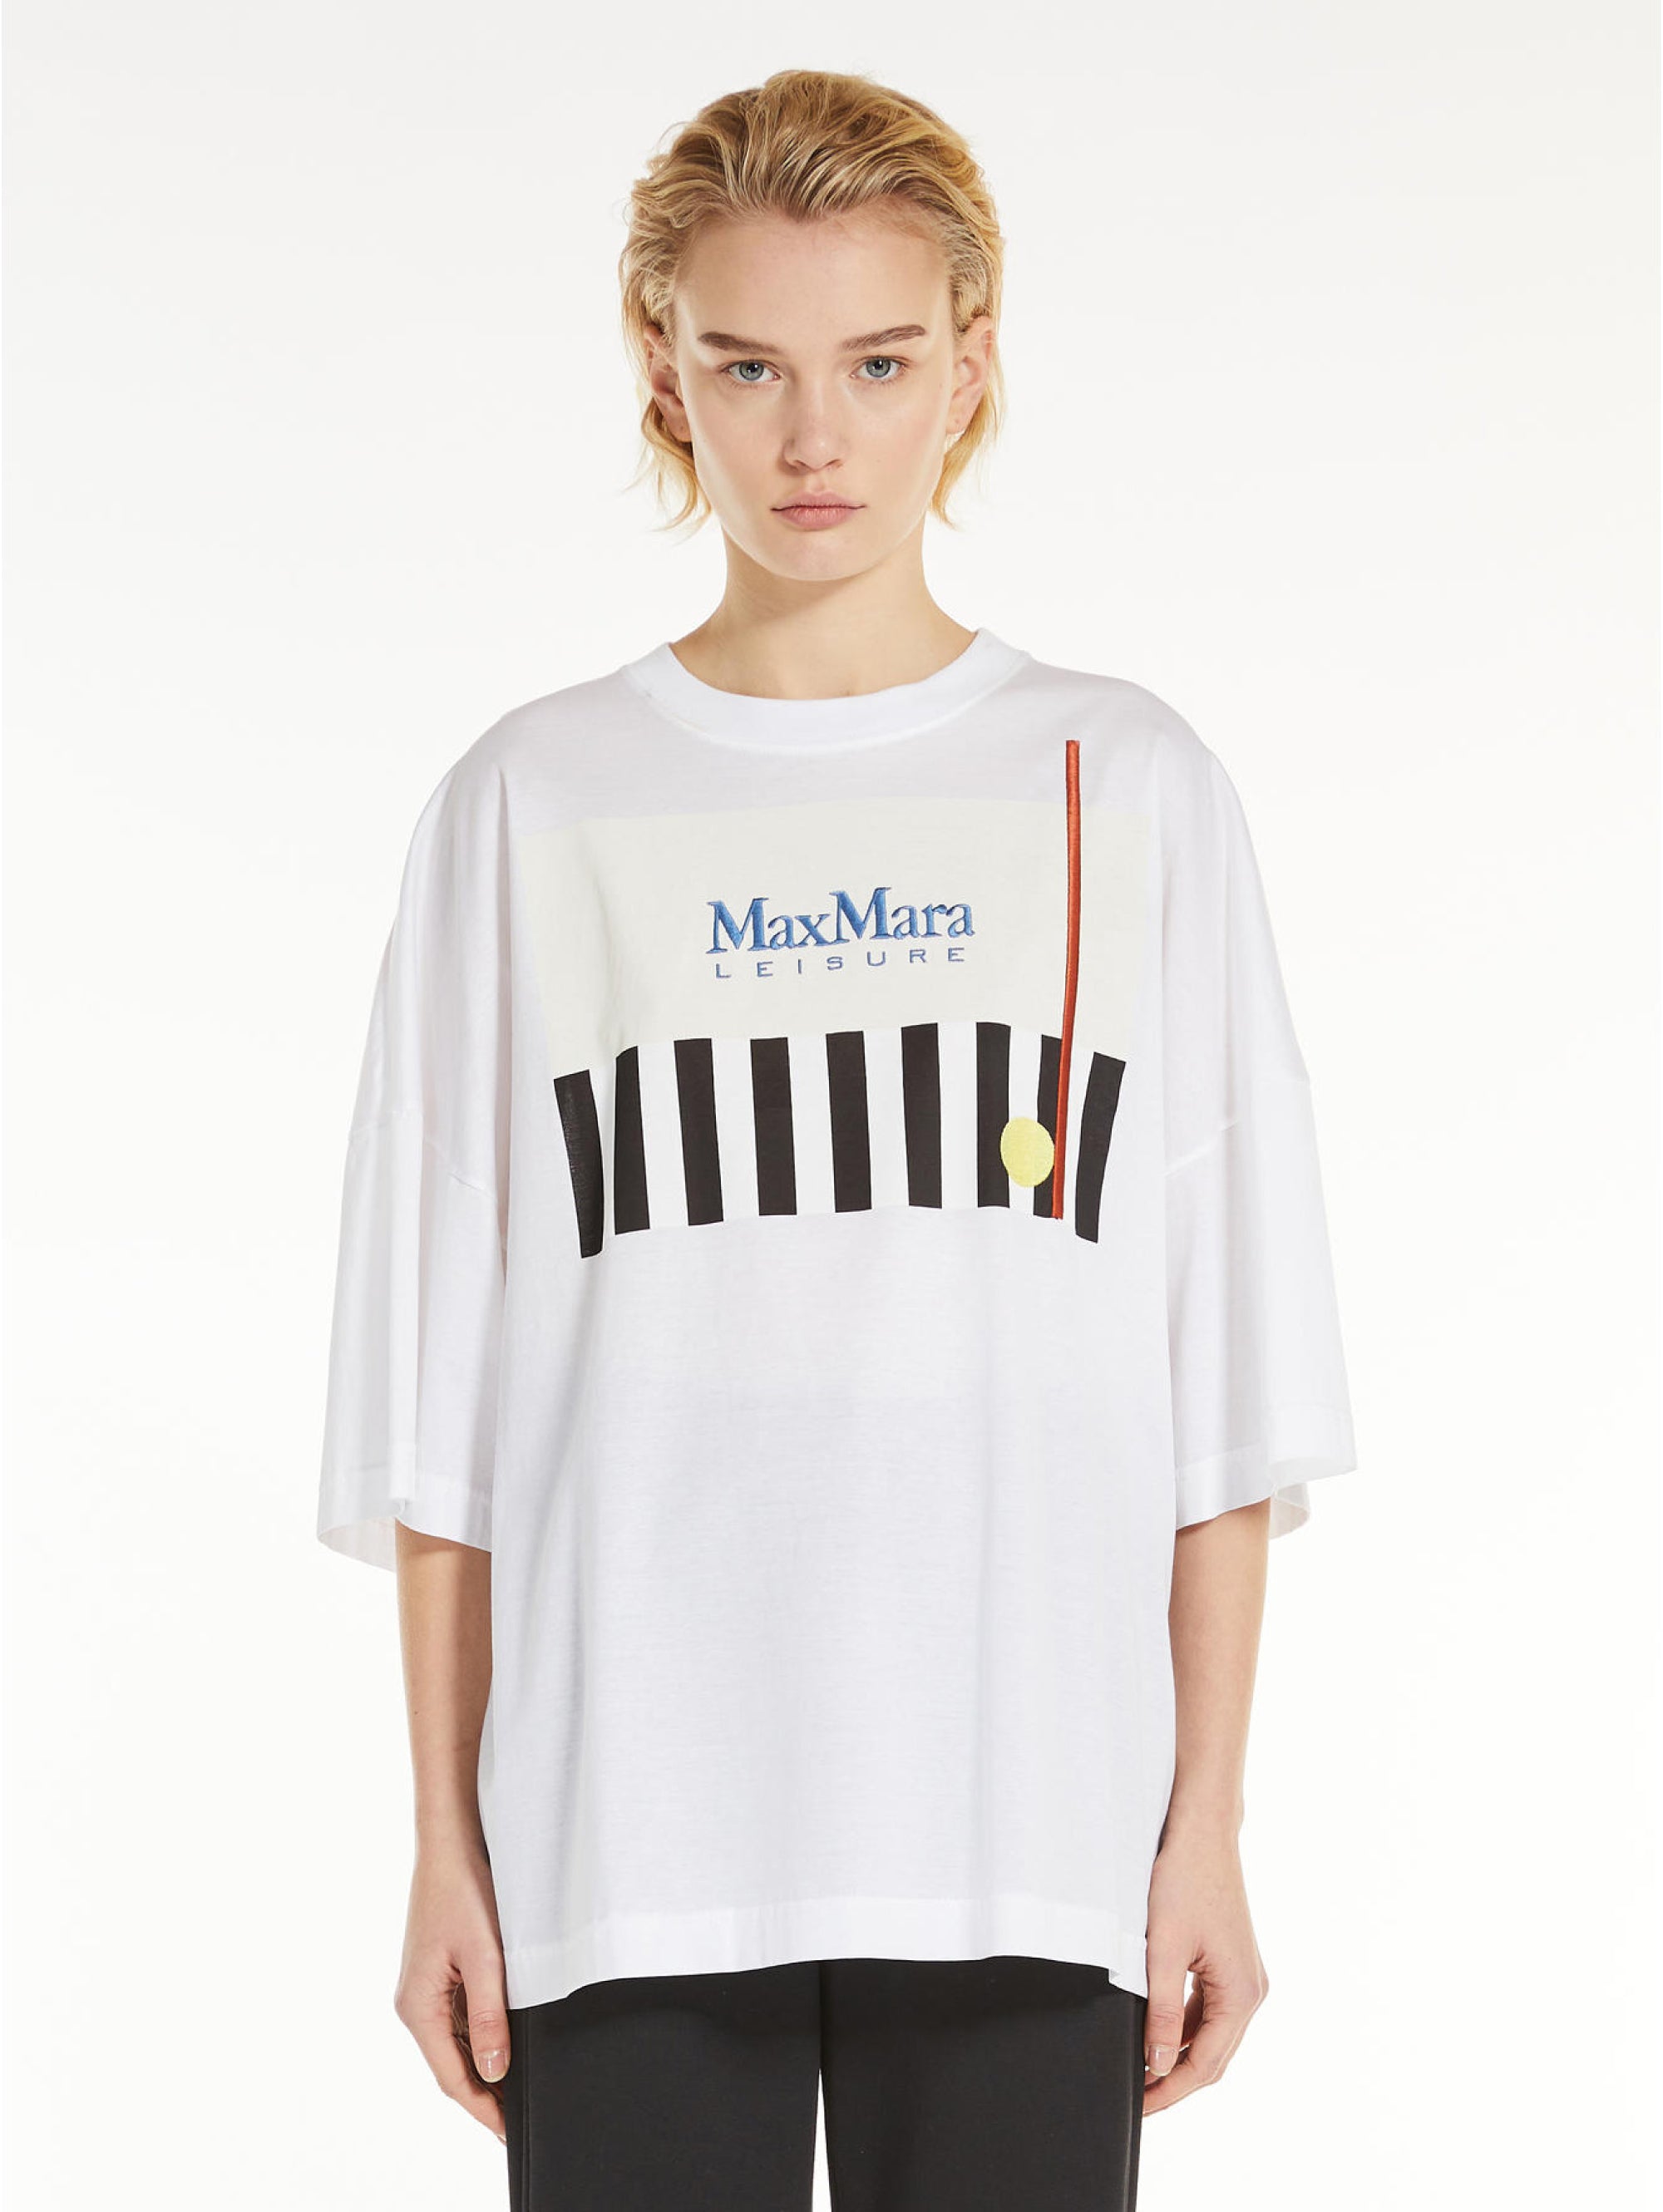 MAX MARA LEISURE-T-shirt Girocollo Oversize Bianco-TRYME Shop